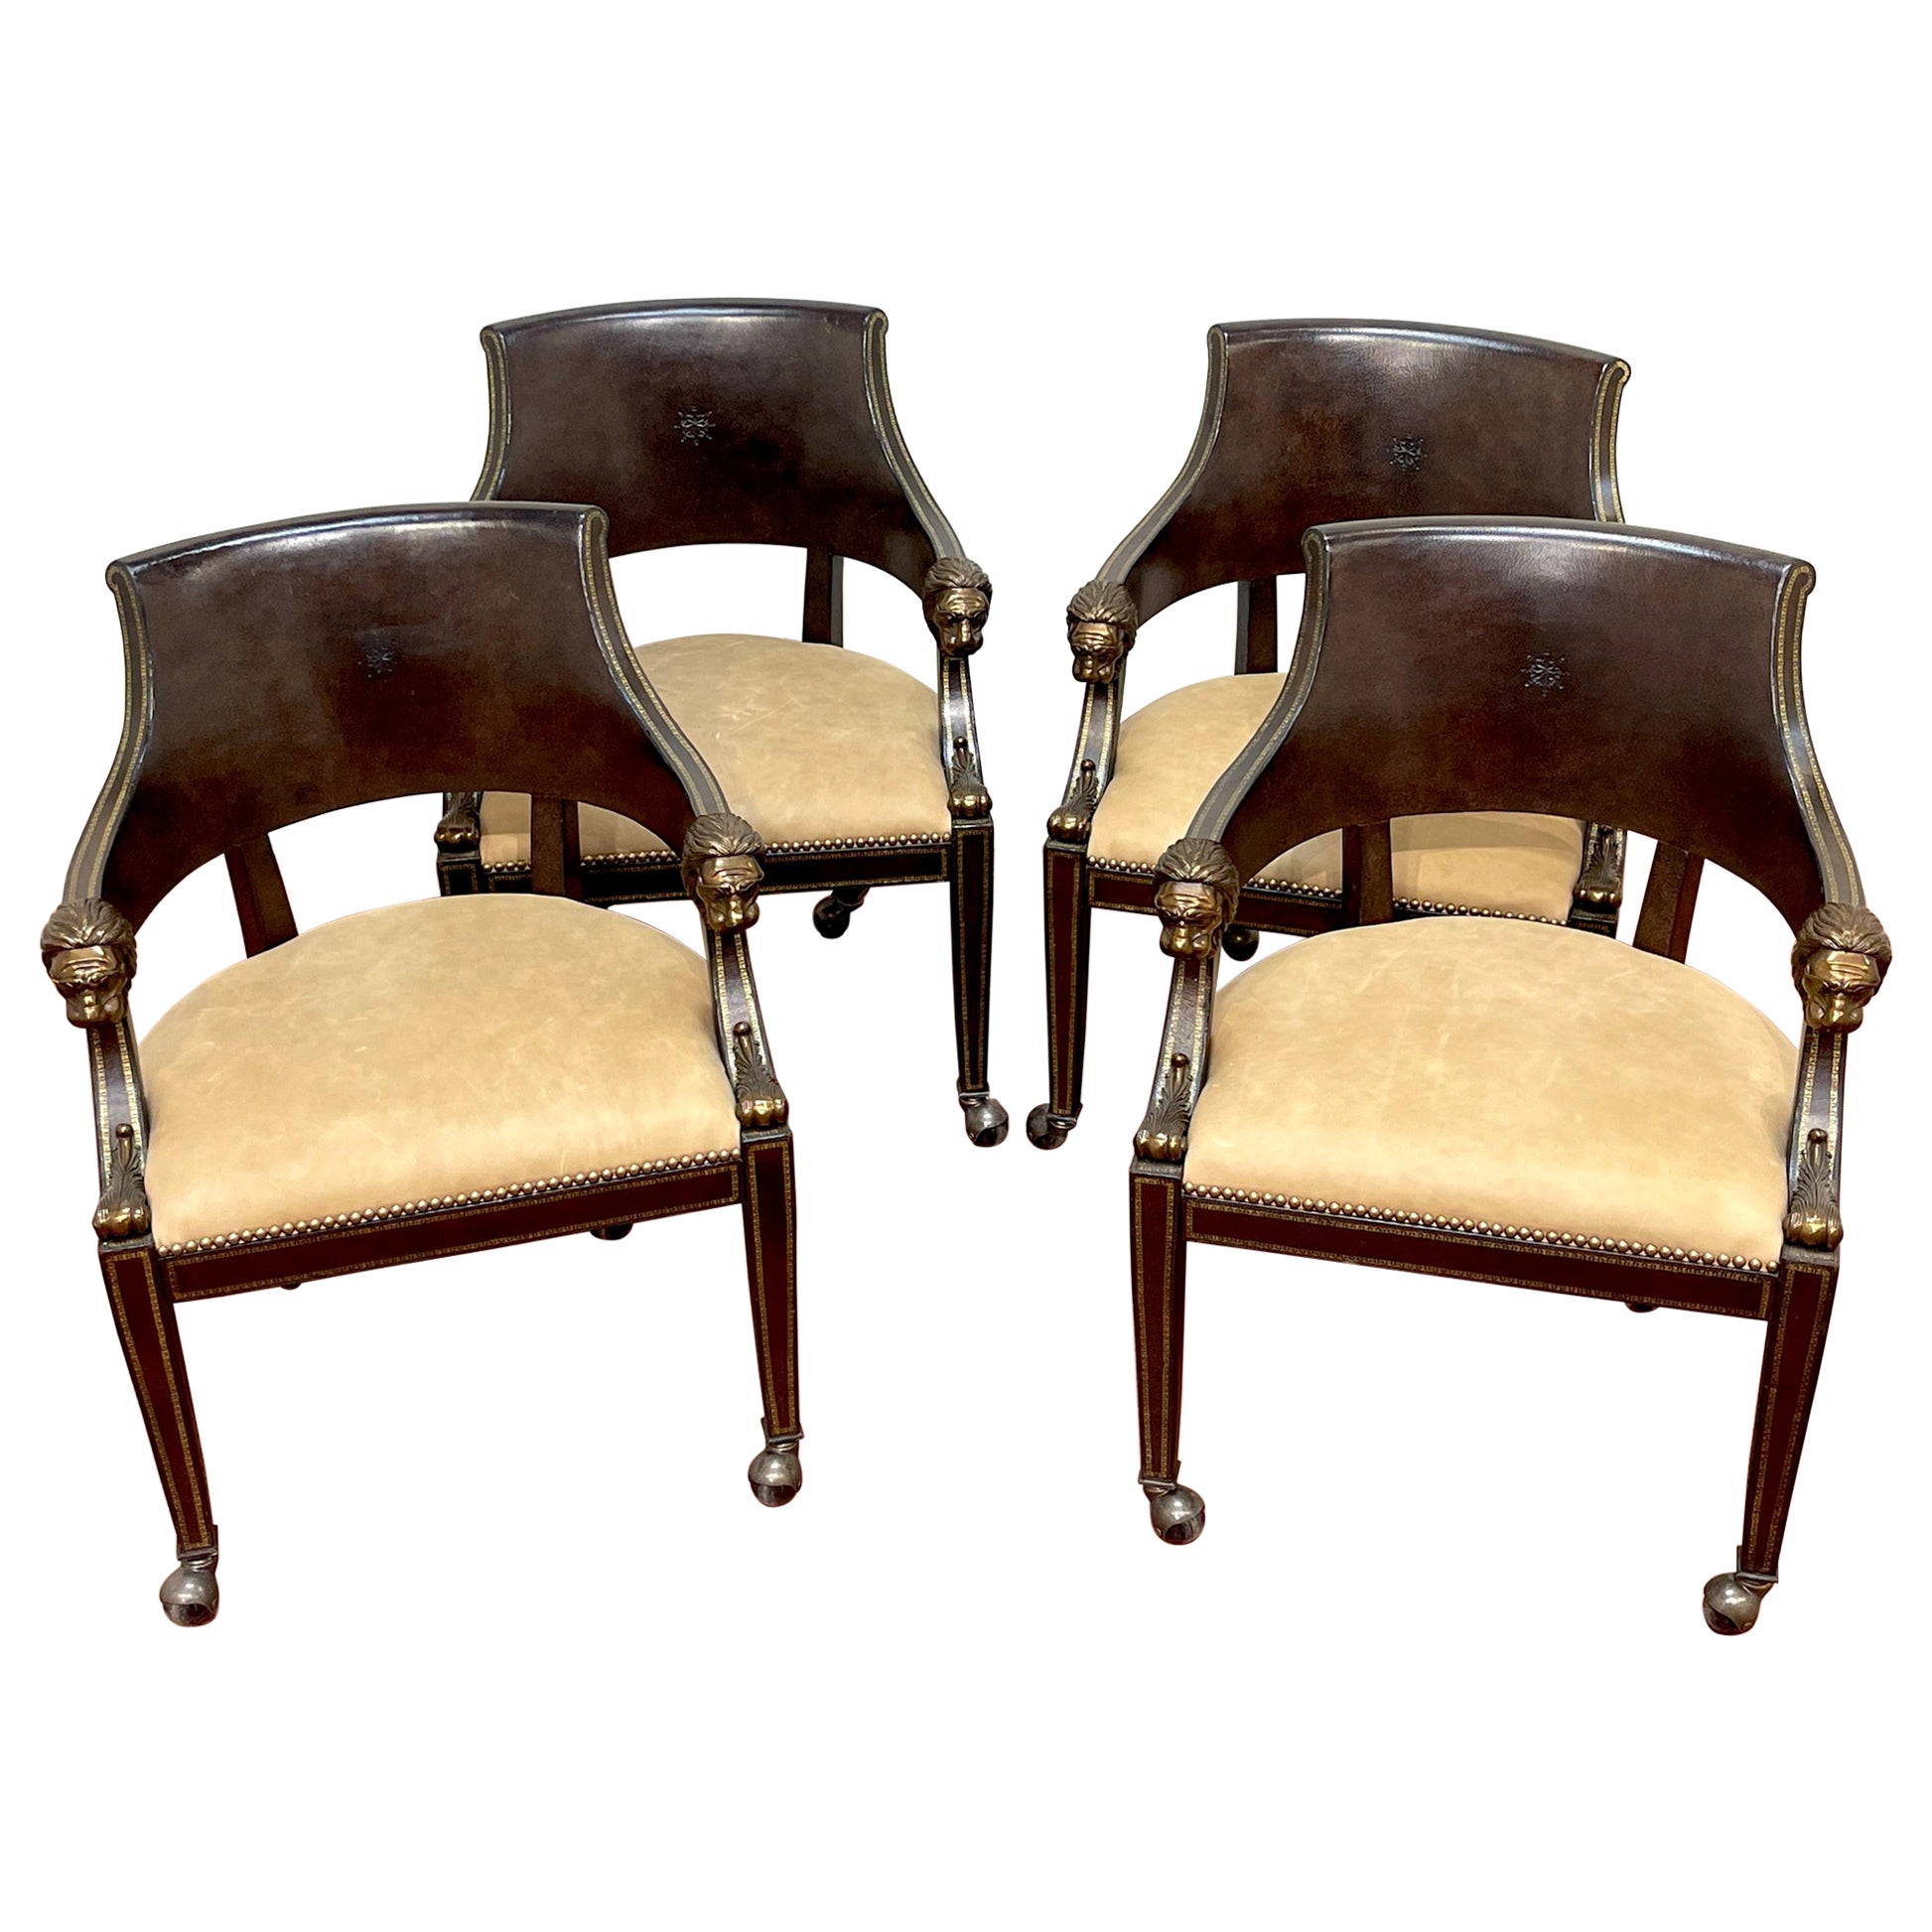 4 fauteuils à tête de lion en cuir doré et bronze travaillé sur roulettes, par Maitland-Smith